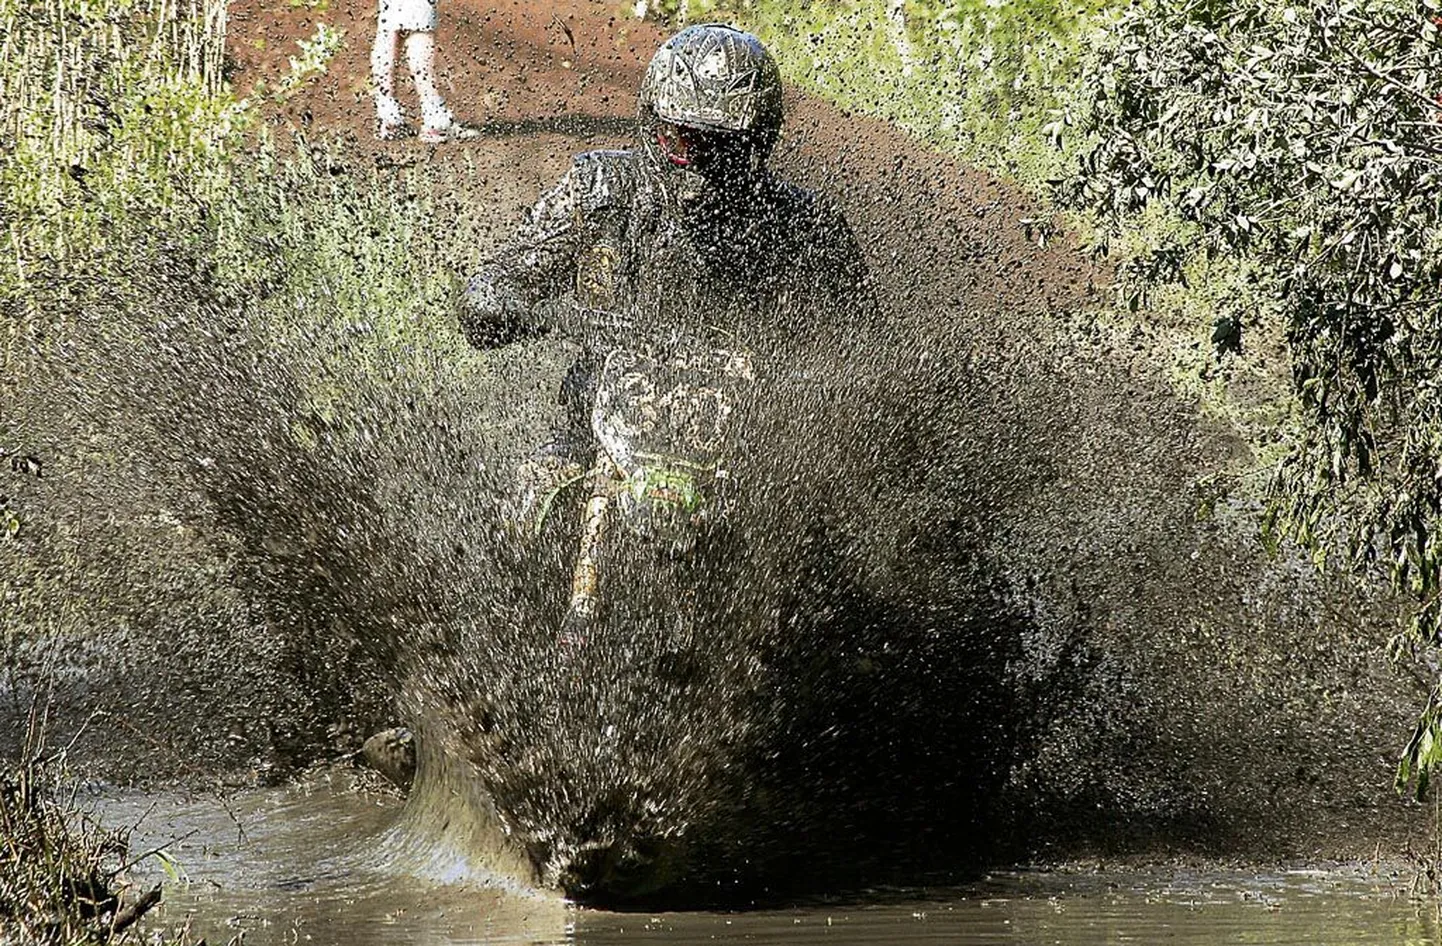 Paikuse enduro kõige ekstreemsemad rajalõigud on Sindi endises lasketiirus, kus võidusõitjaid ootavad ees vett täis kraavid ja põhjatud mudamülkad.